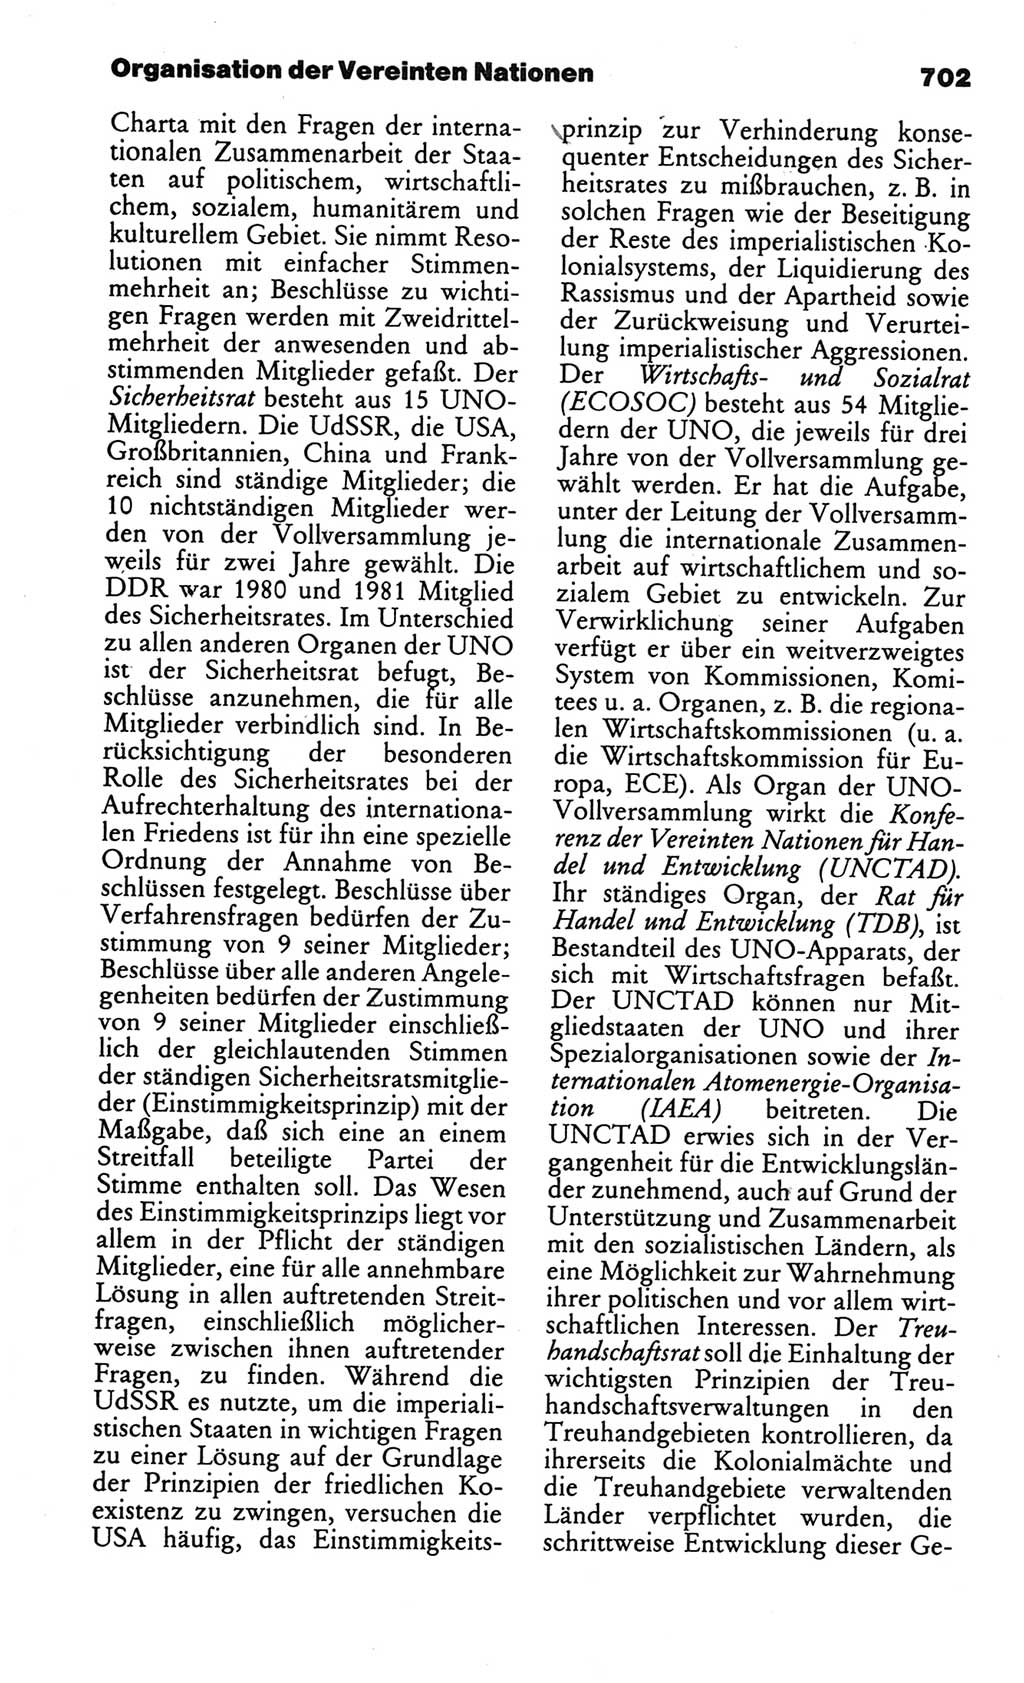 Kleines politisches Wörterbuch [Deutsche Demokratische Republik (DDR)] 1986, Seite 702 (Kl. pol. Wb. DDR 1986, S. 702)